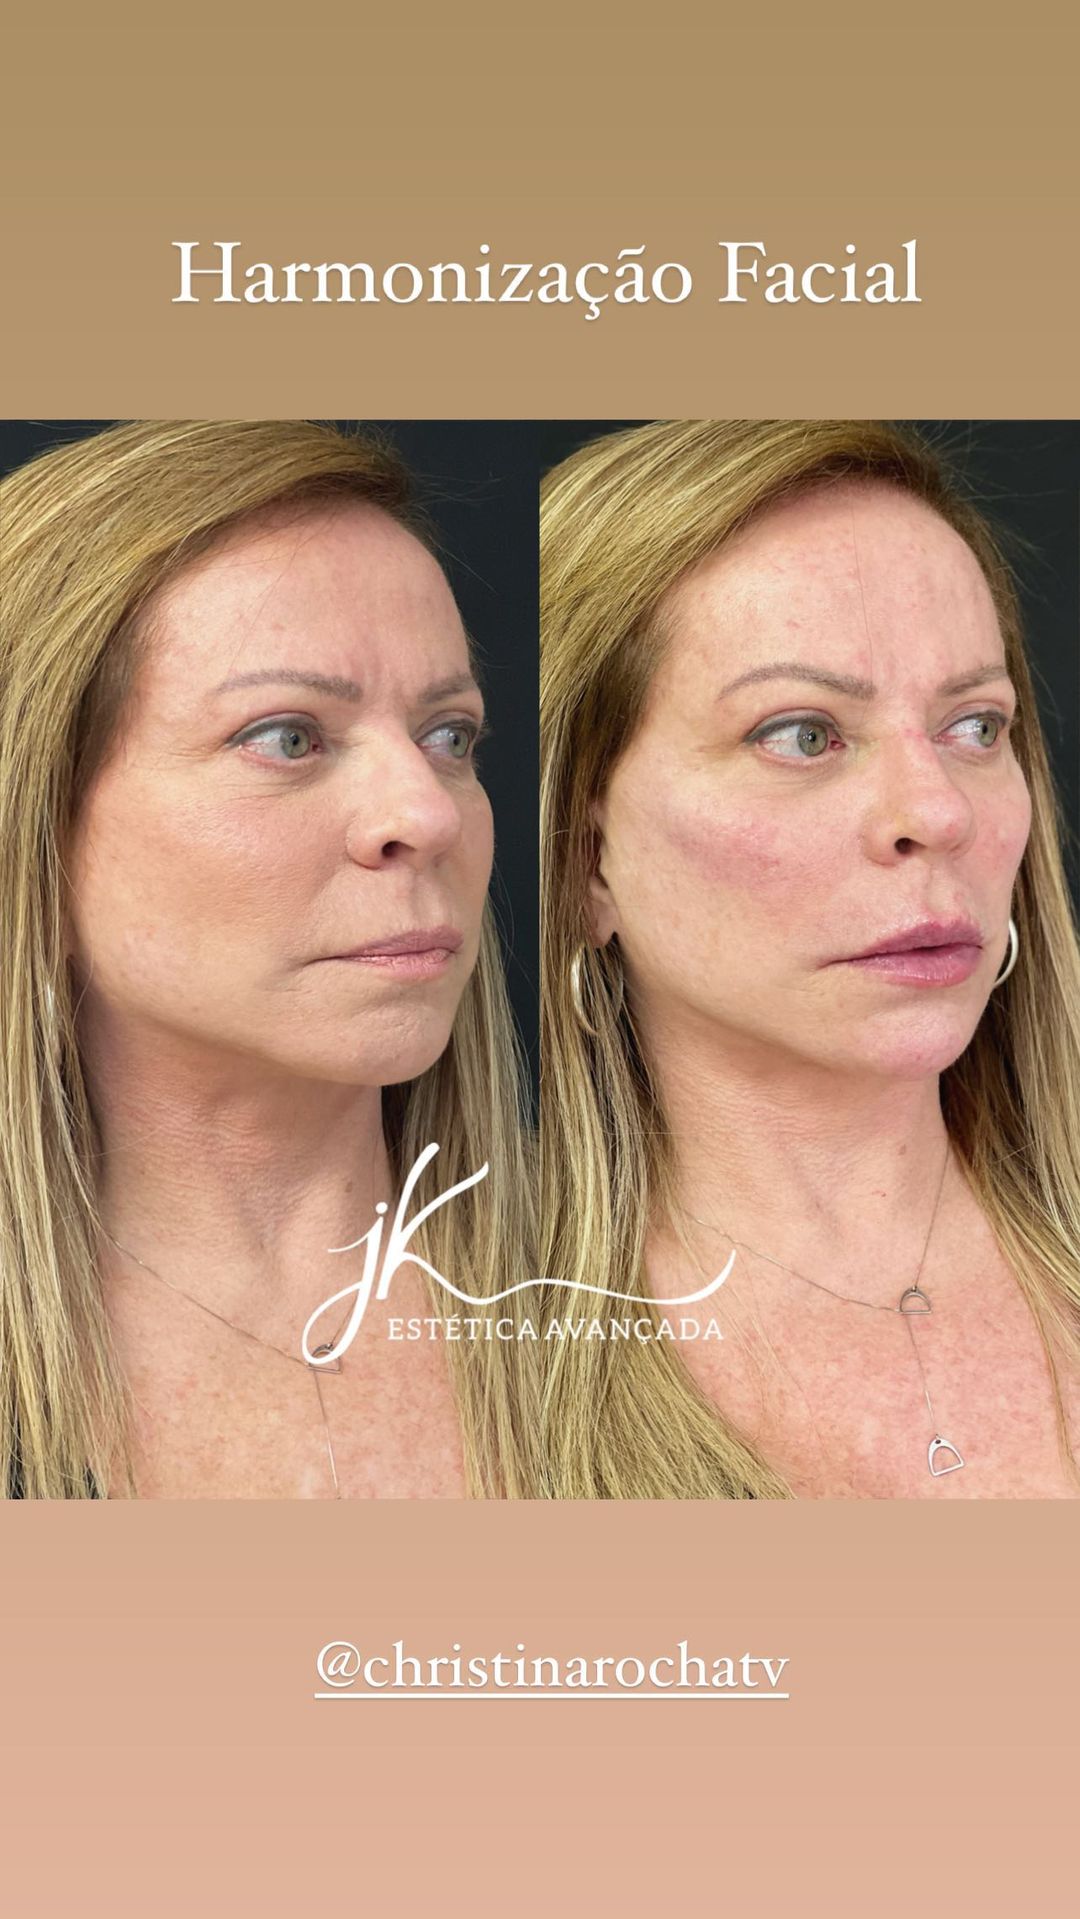 Christina Rocha se submeteu a harmonização facial aos 65 anos - Foto: Reprodução/ Instagram@jkesteticaavancada